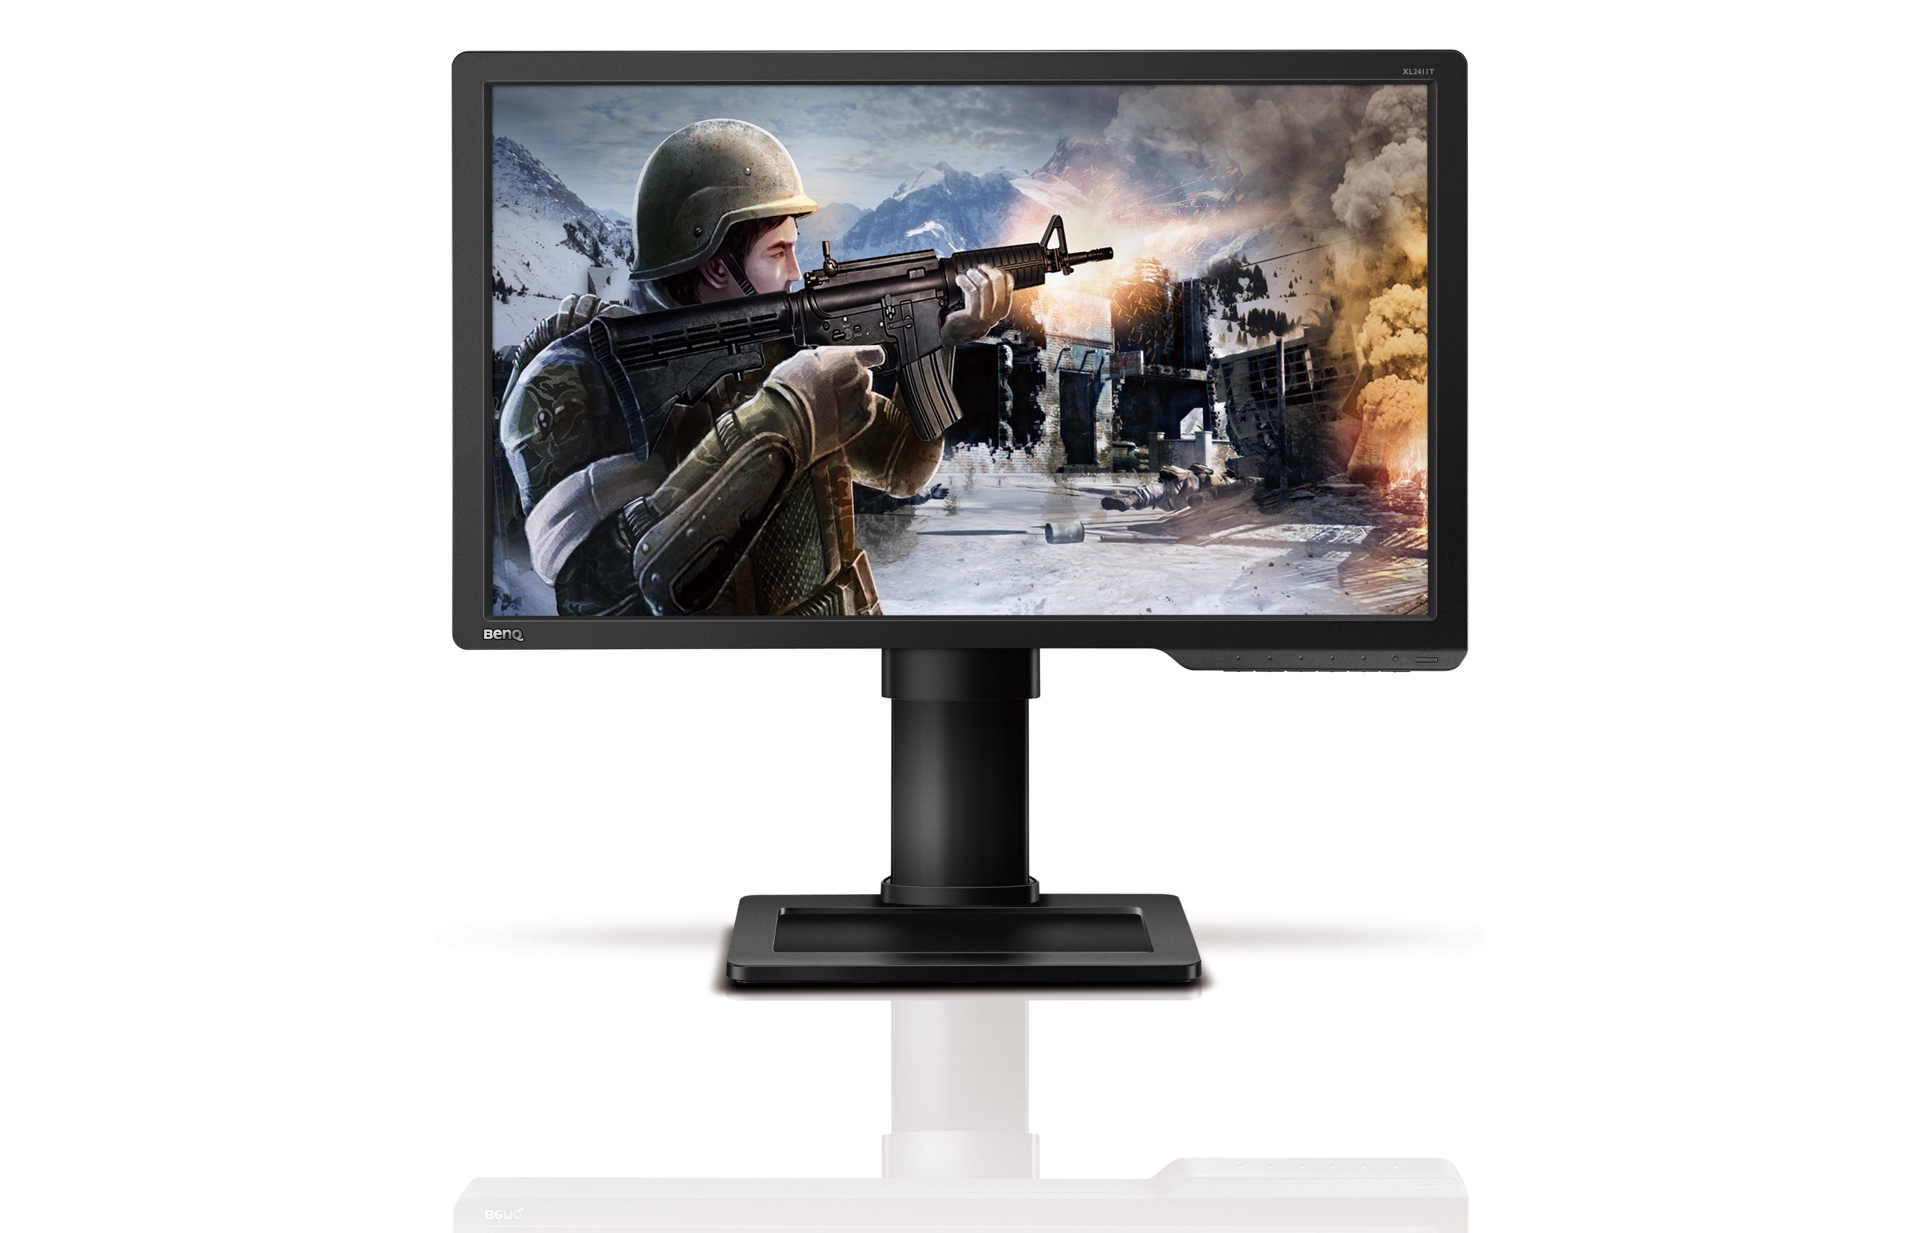 Immagine pubblicata in relazione al seguente contenuto: BenQ introduce il monitor Full HD gaming-oriented XL2411T | Nome immagine: news18184_benq-XL2411T_1.jpg